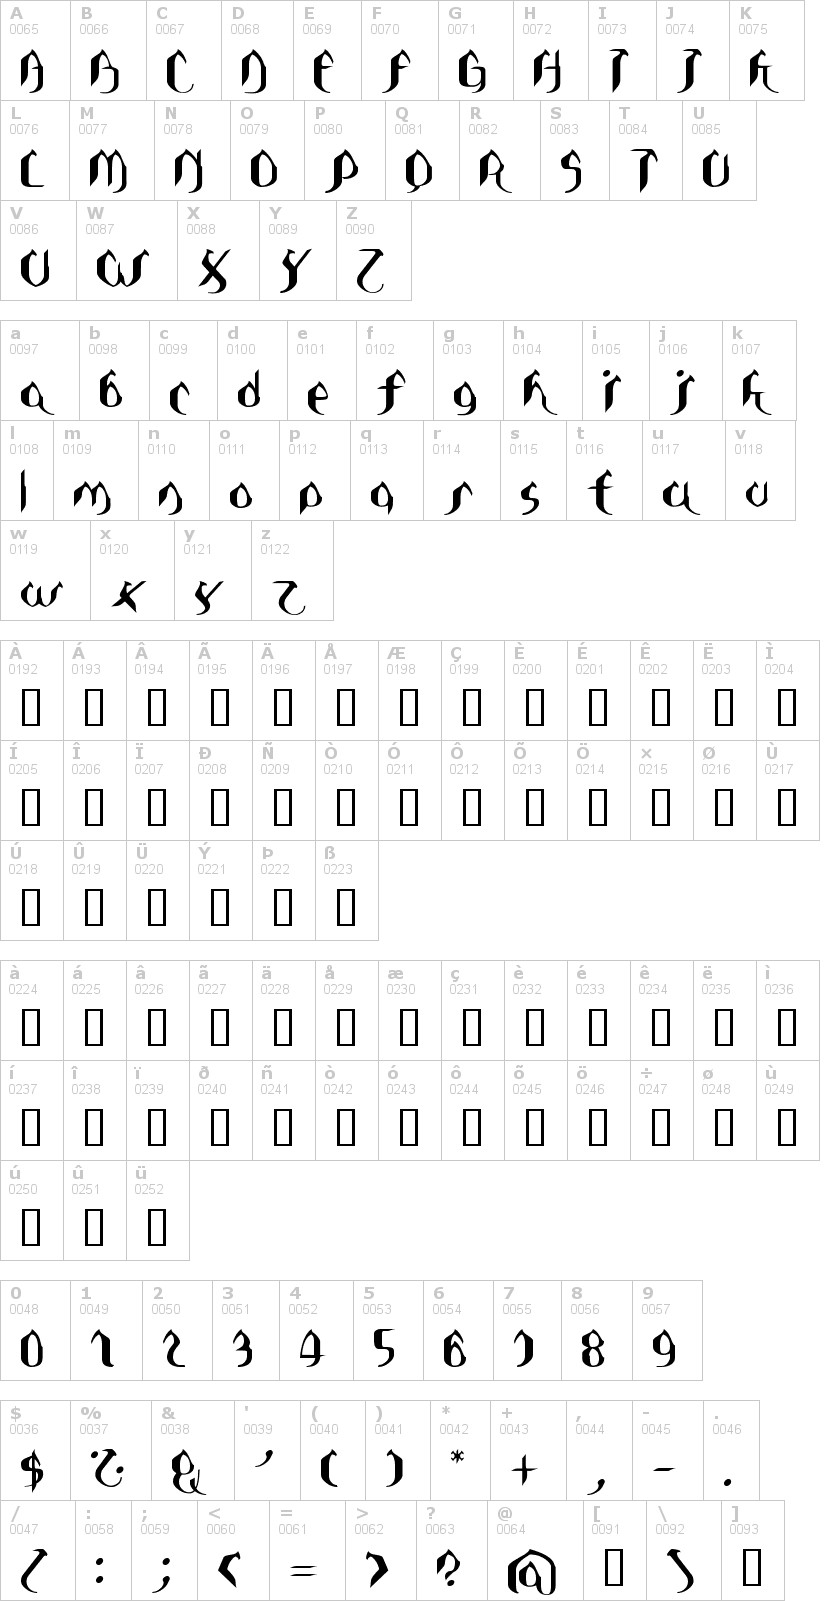 Lettere dell'alfabeto del font asie con le quali è possibile realizzare adesivi prespaziati